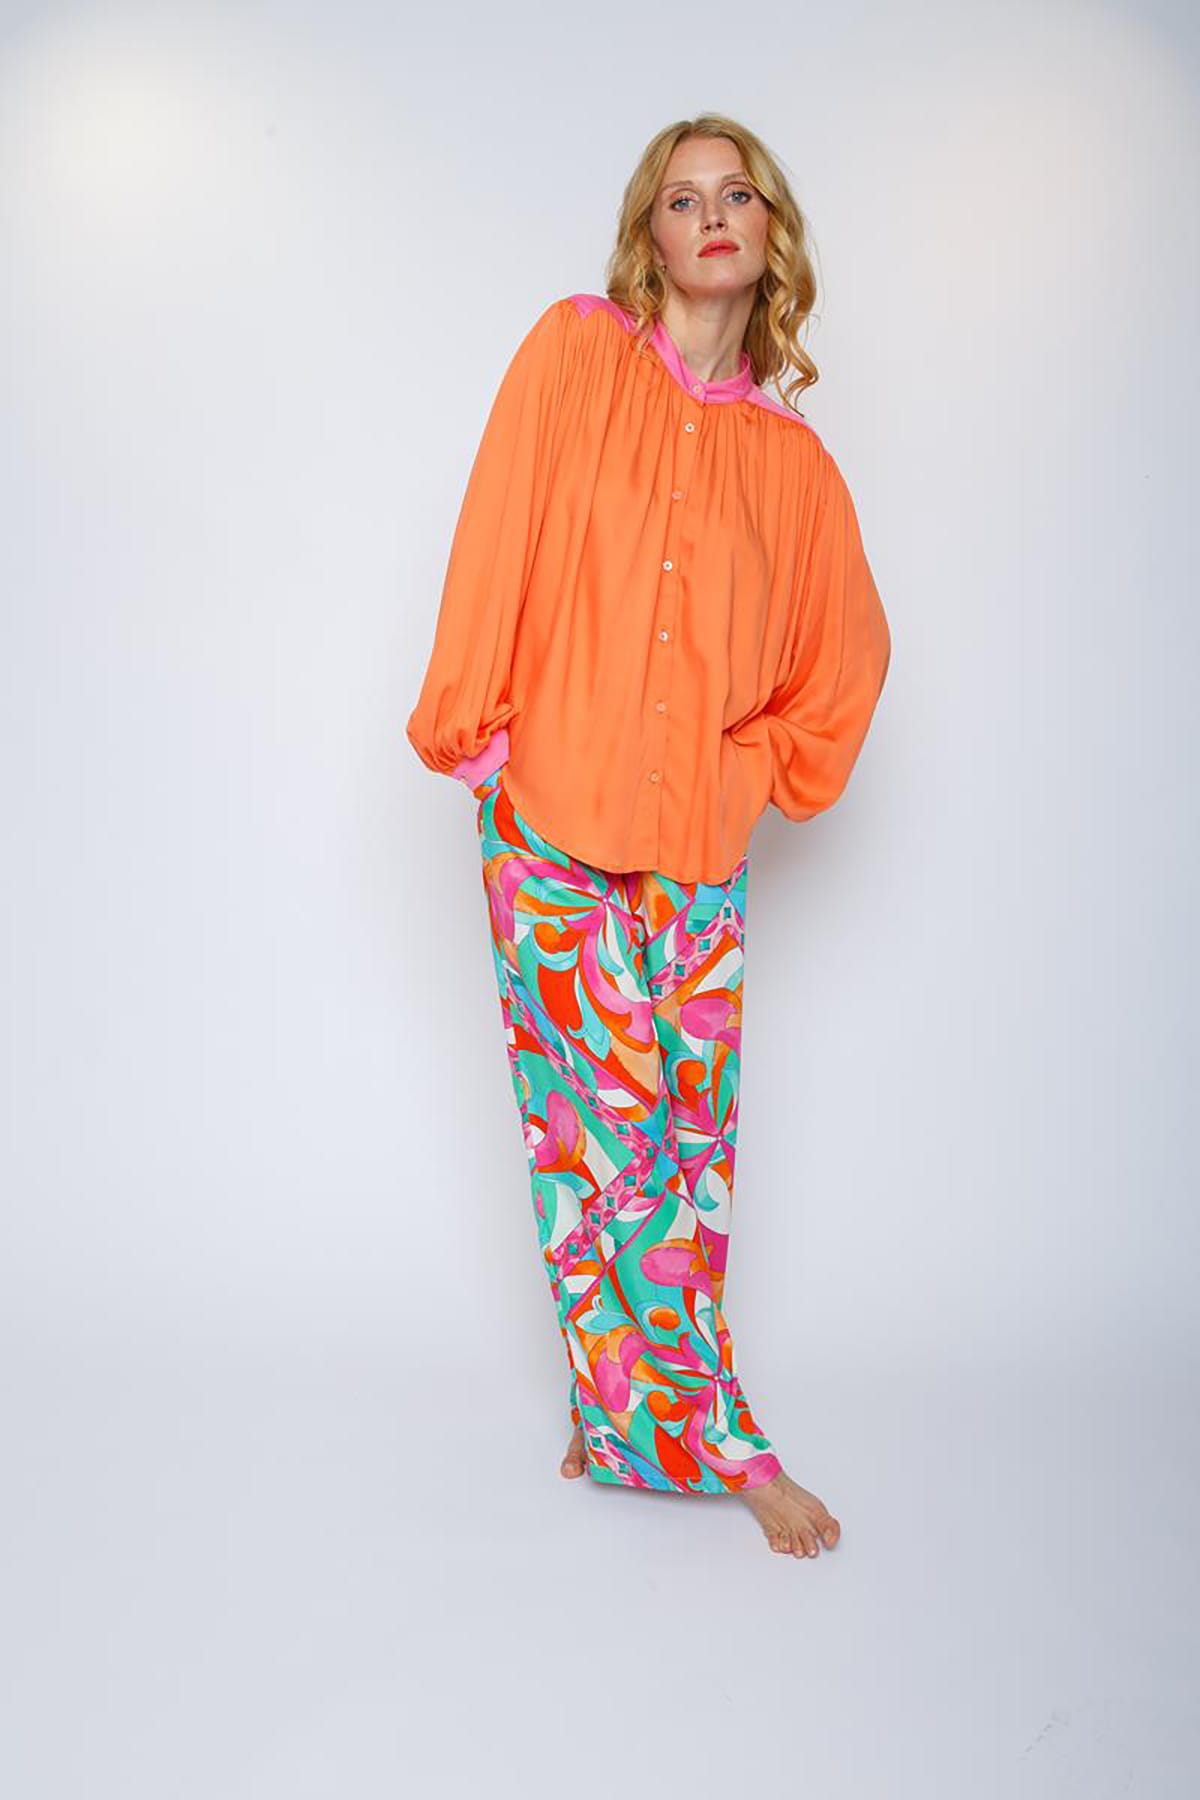 Weite Bluse mit pinken Details orange Bluse Emily van den Bergh 